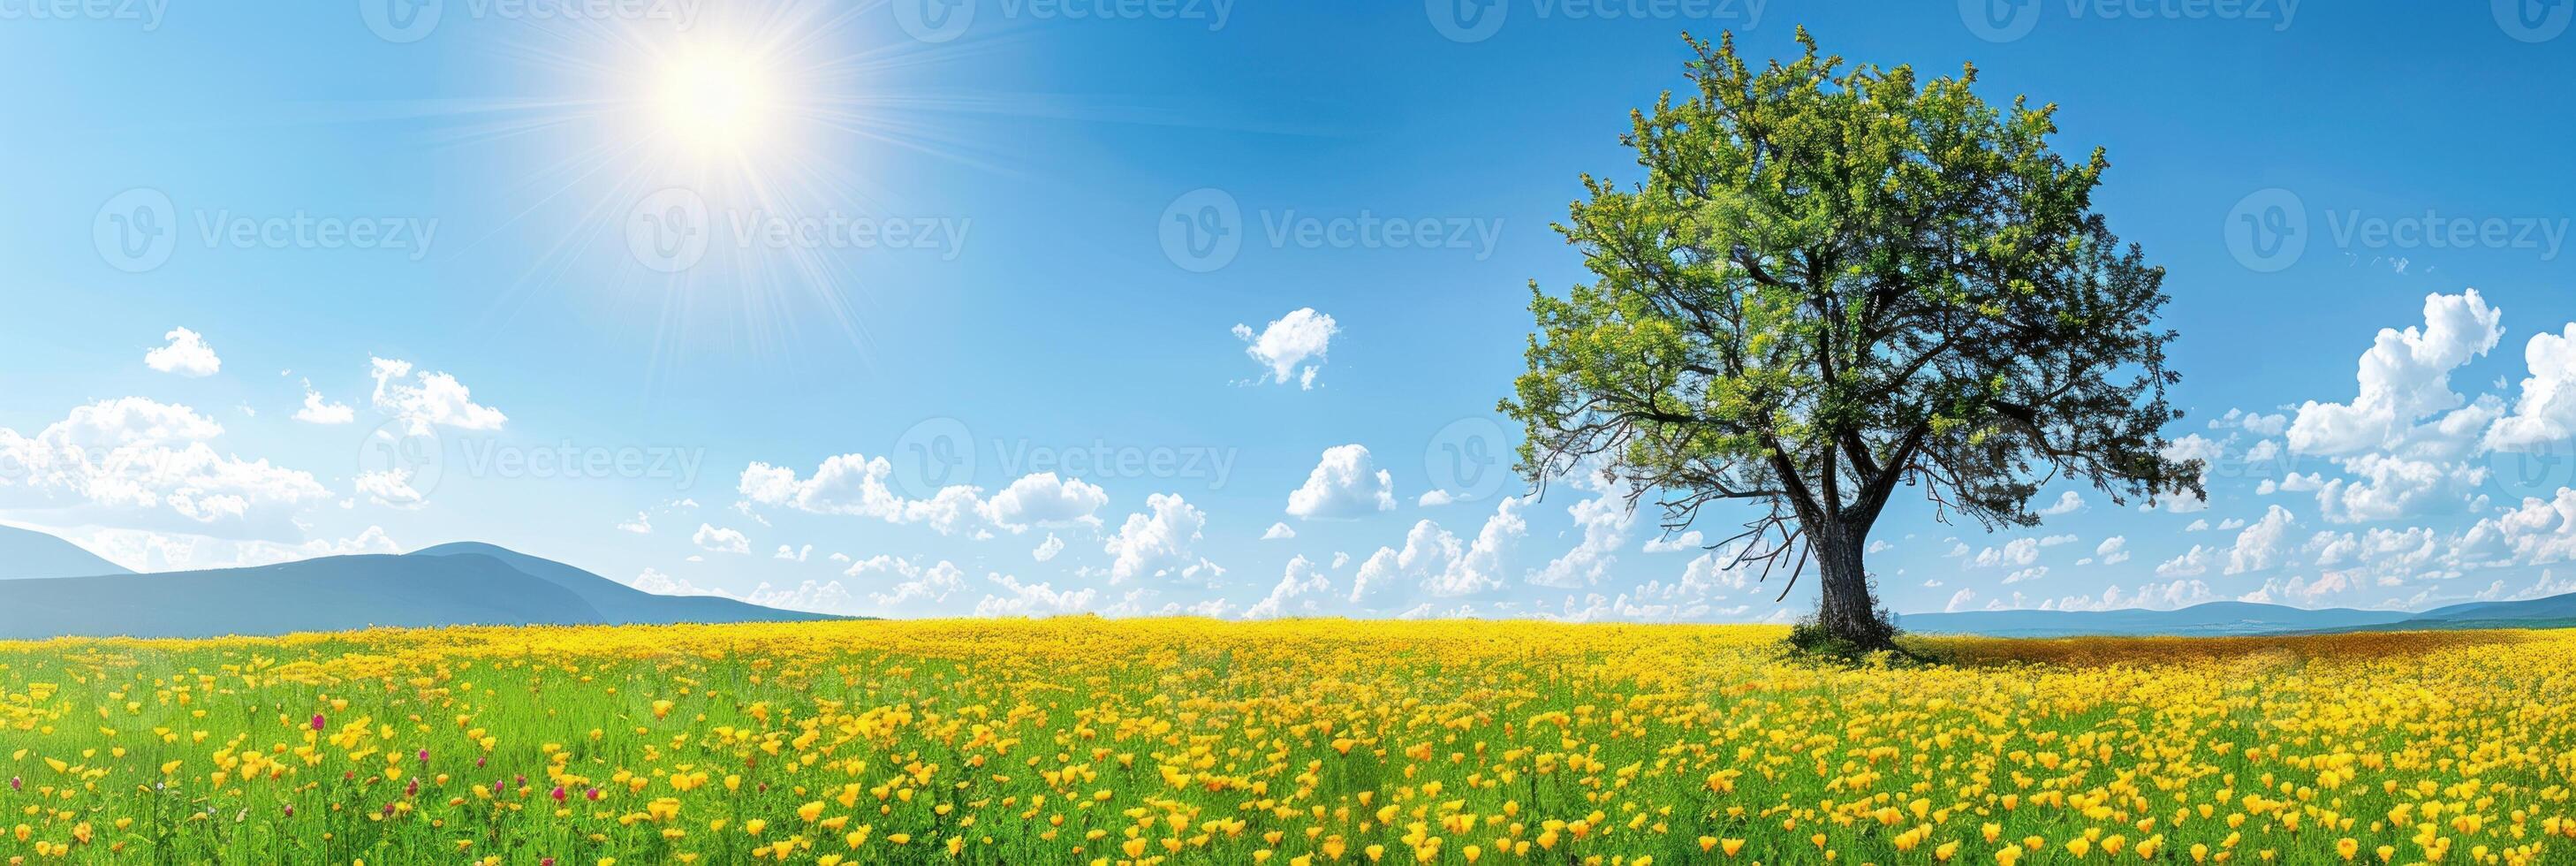 un soltero árbol soportes en medio de un mar de amarillo floraciones en un vibrante campo foto